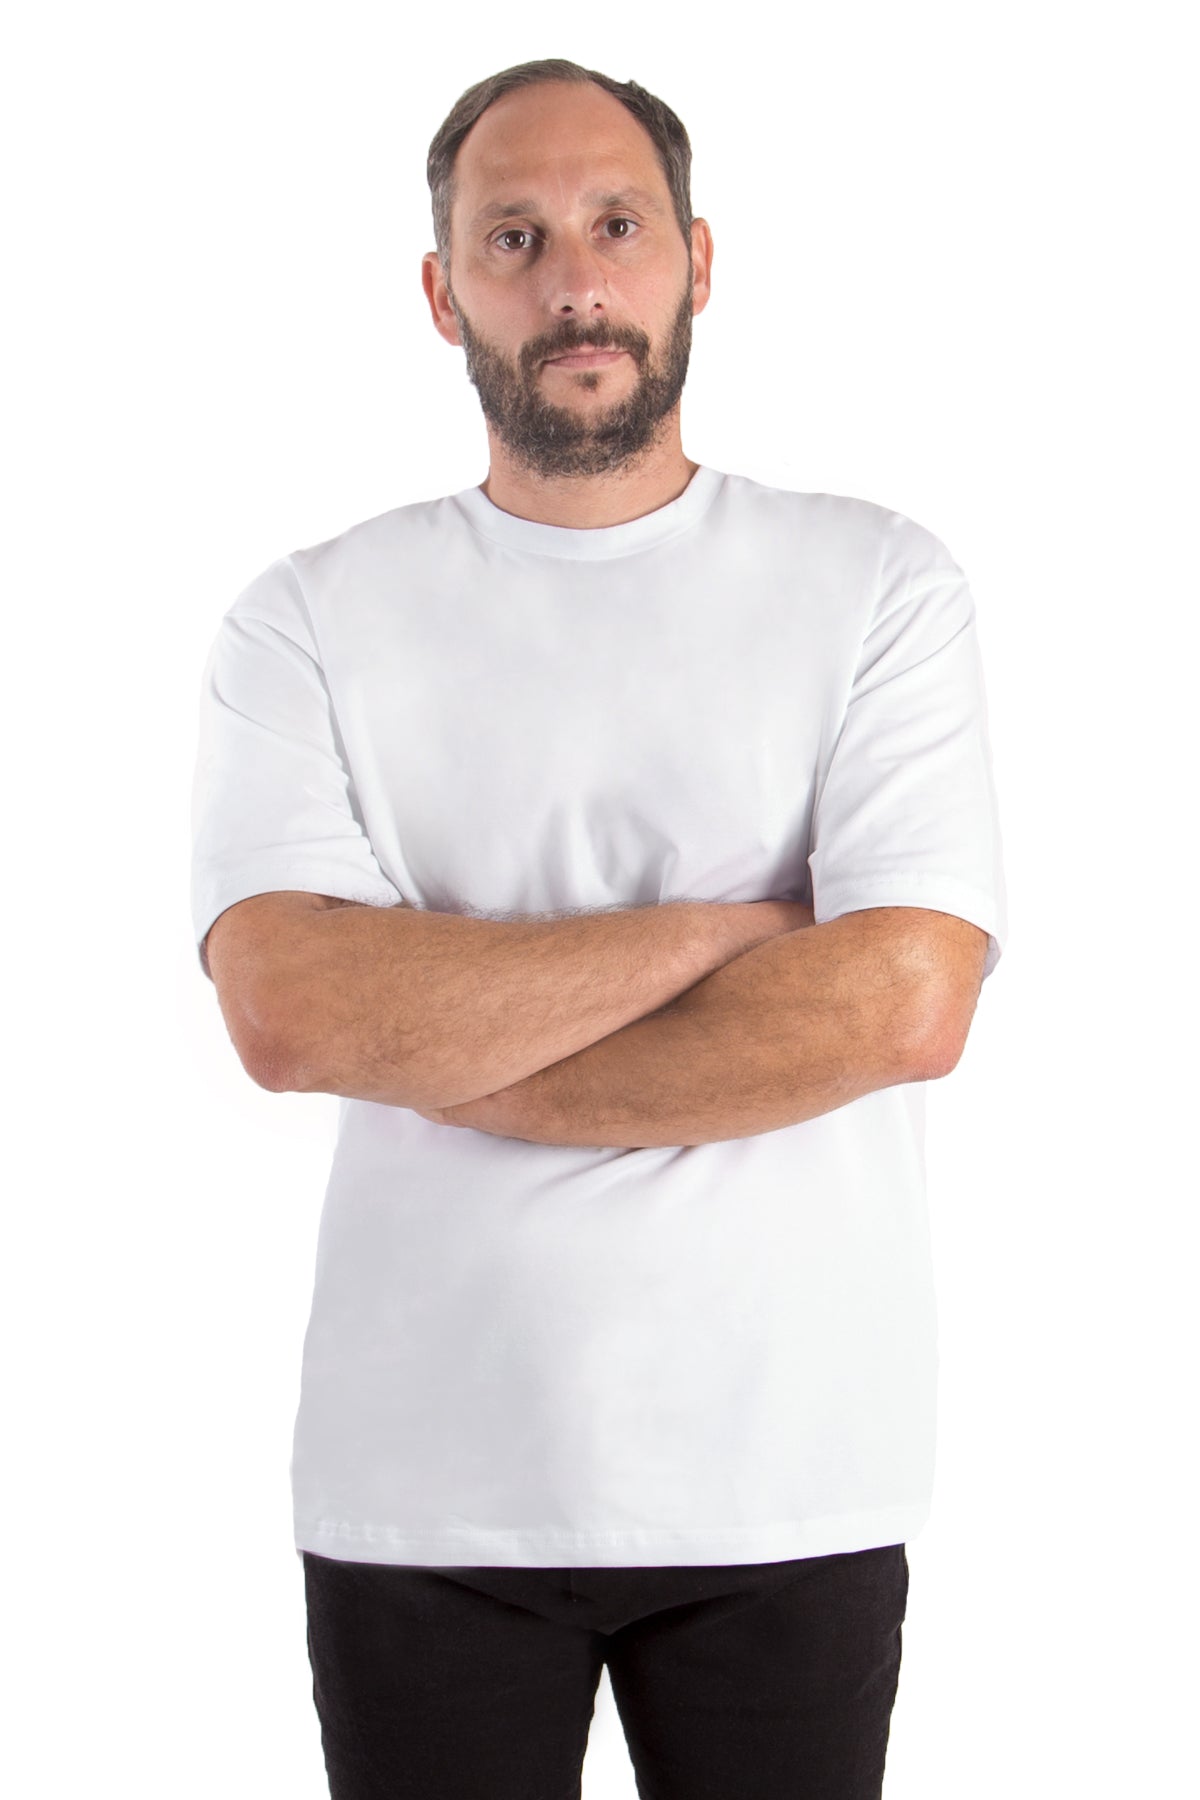 T-Shirt Oversized (10er-Pack) - applegreen